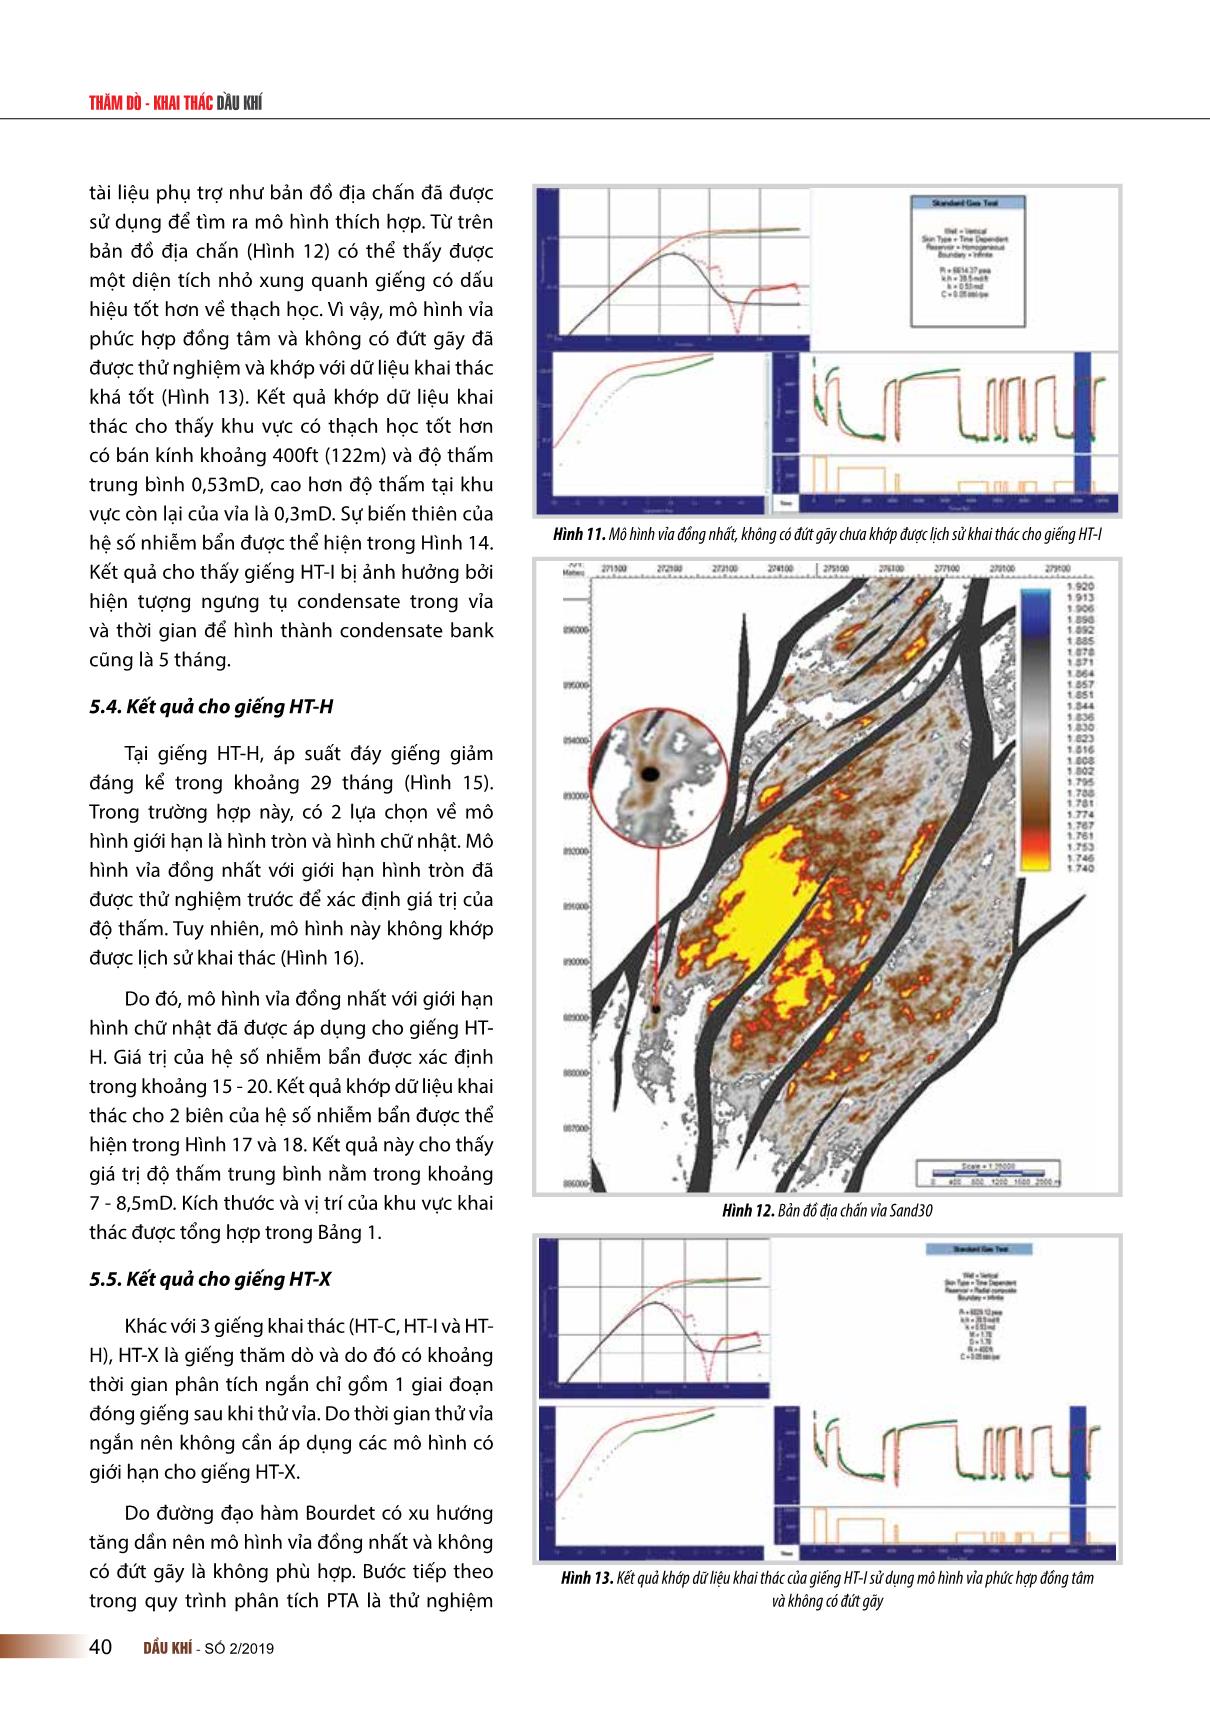 Kết quả đo độ thấm bằng nhiều phương pháp khác nhau cho vỉa turbidite mỏ Hải Thạch, bể Nam Côn Sơn trang 6